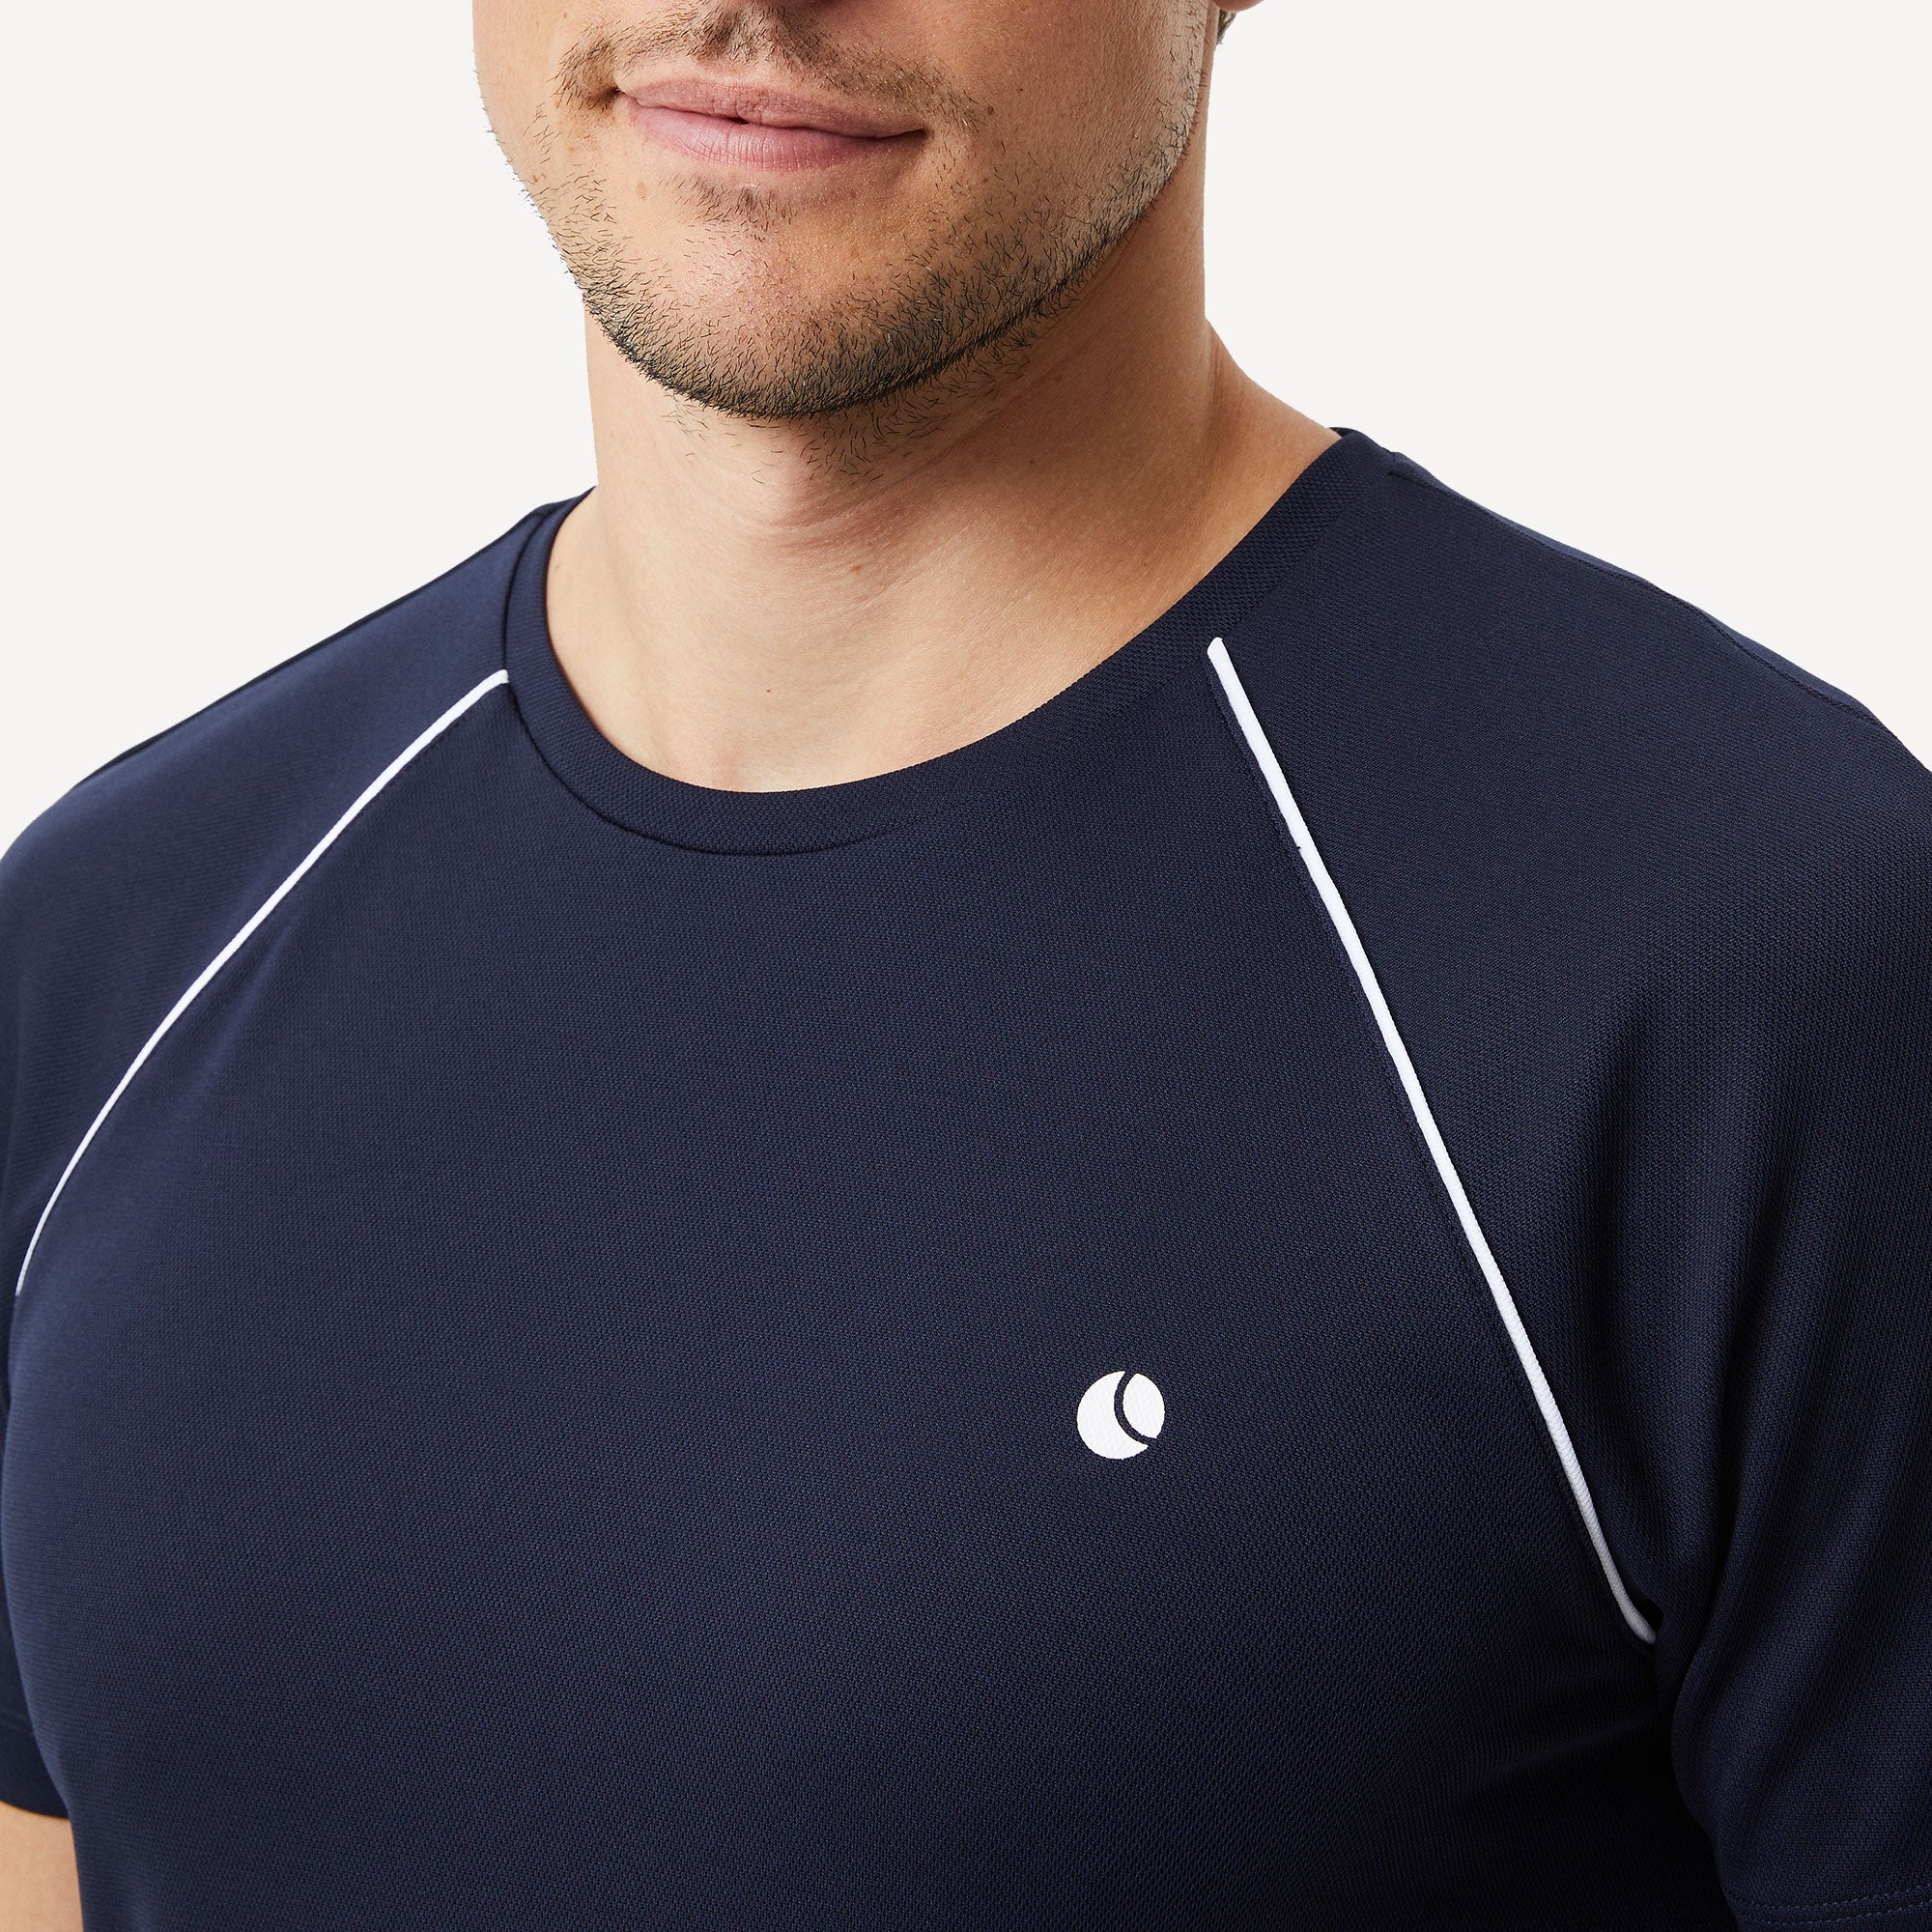 Björn Borg Ace Racquet Men's Tennis Shirt - Dark Blue (3)